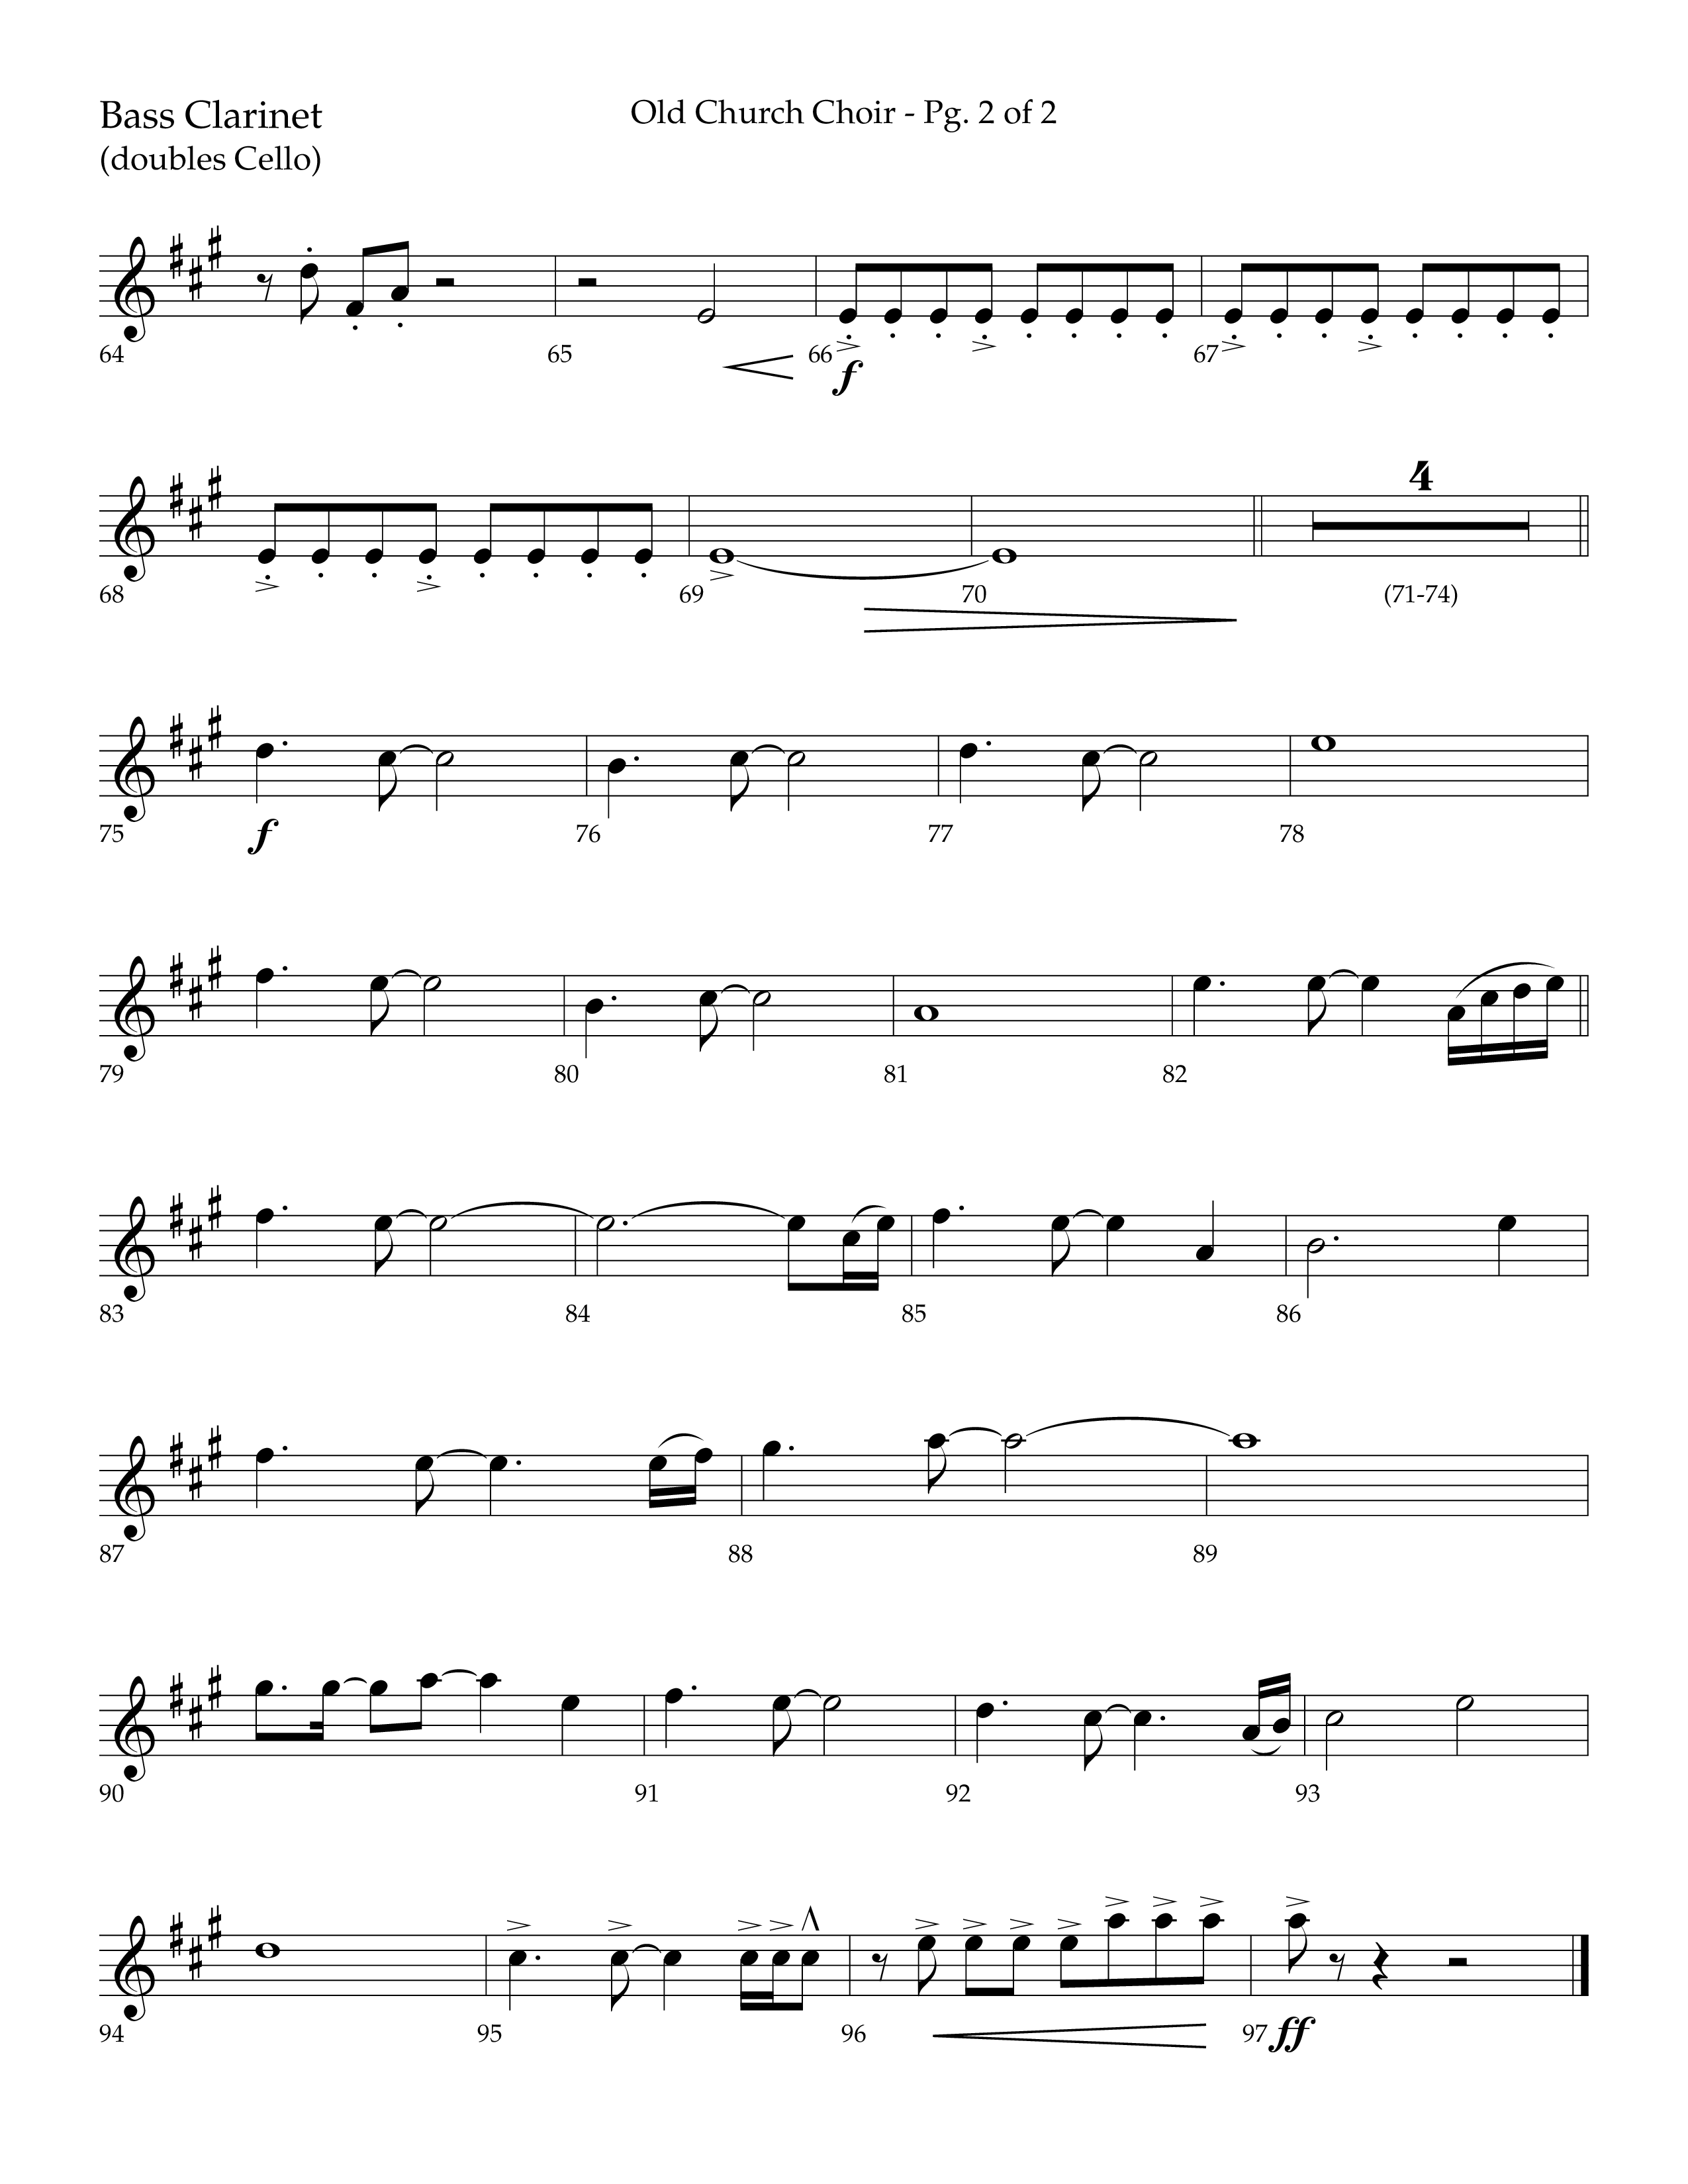 Old Church Choir (Choral Anthem SATB) Bass Clarinet (Lifeway Choral / Arr. Ken Barker / Arr. Craig Adams / Arr. Danny Zaloudik)